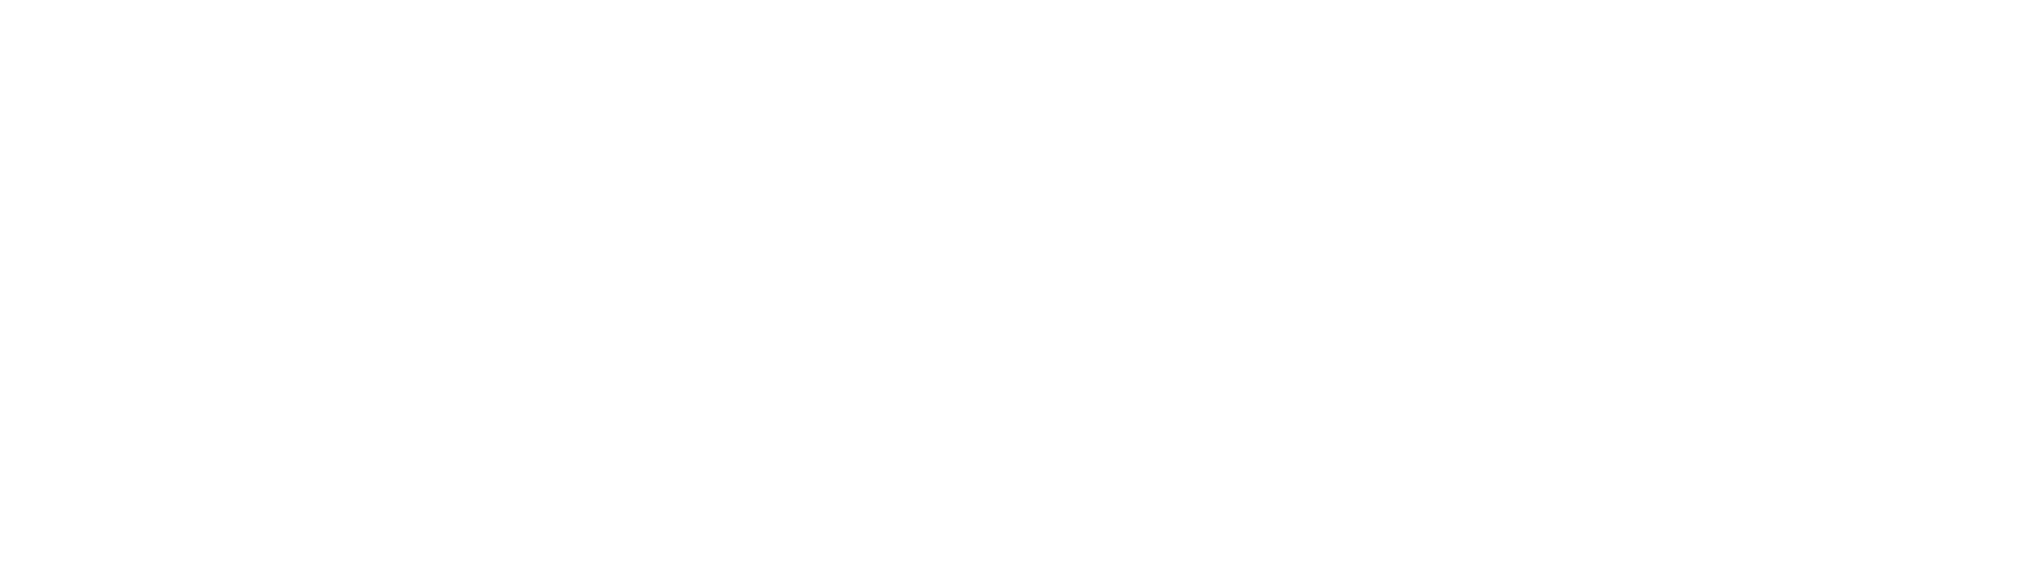 Kowal Bygg Service - logo